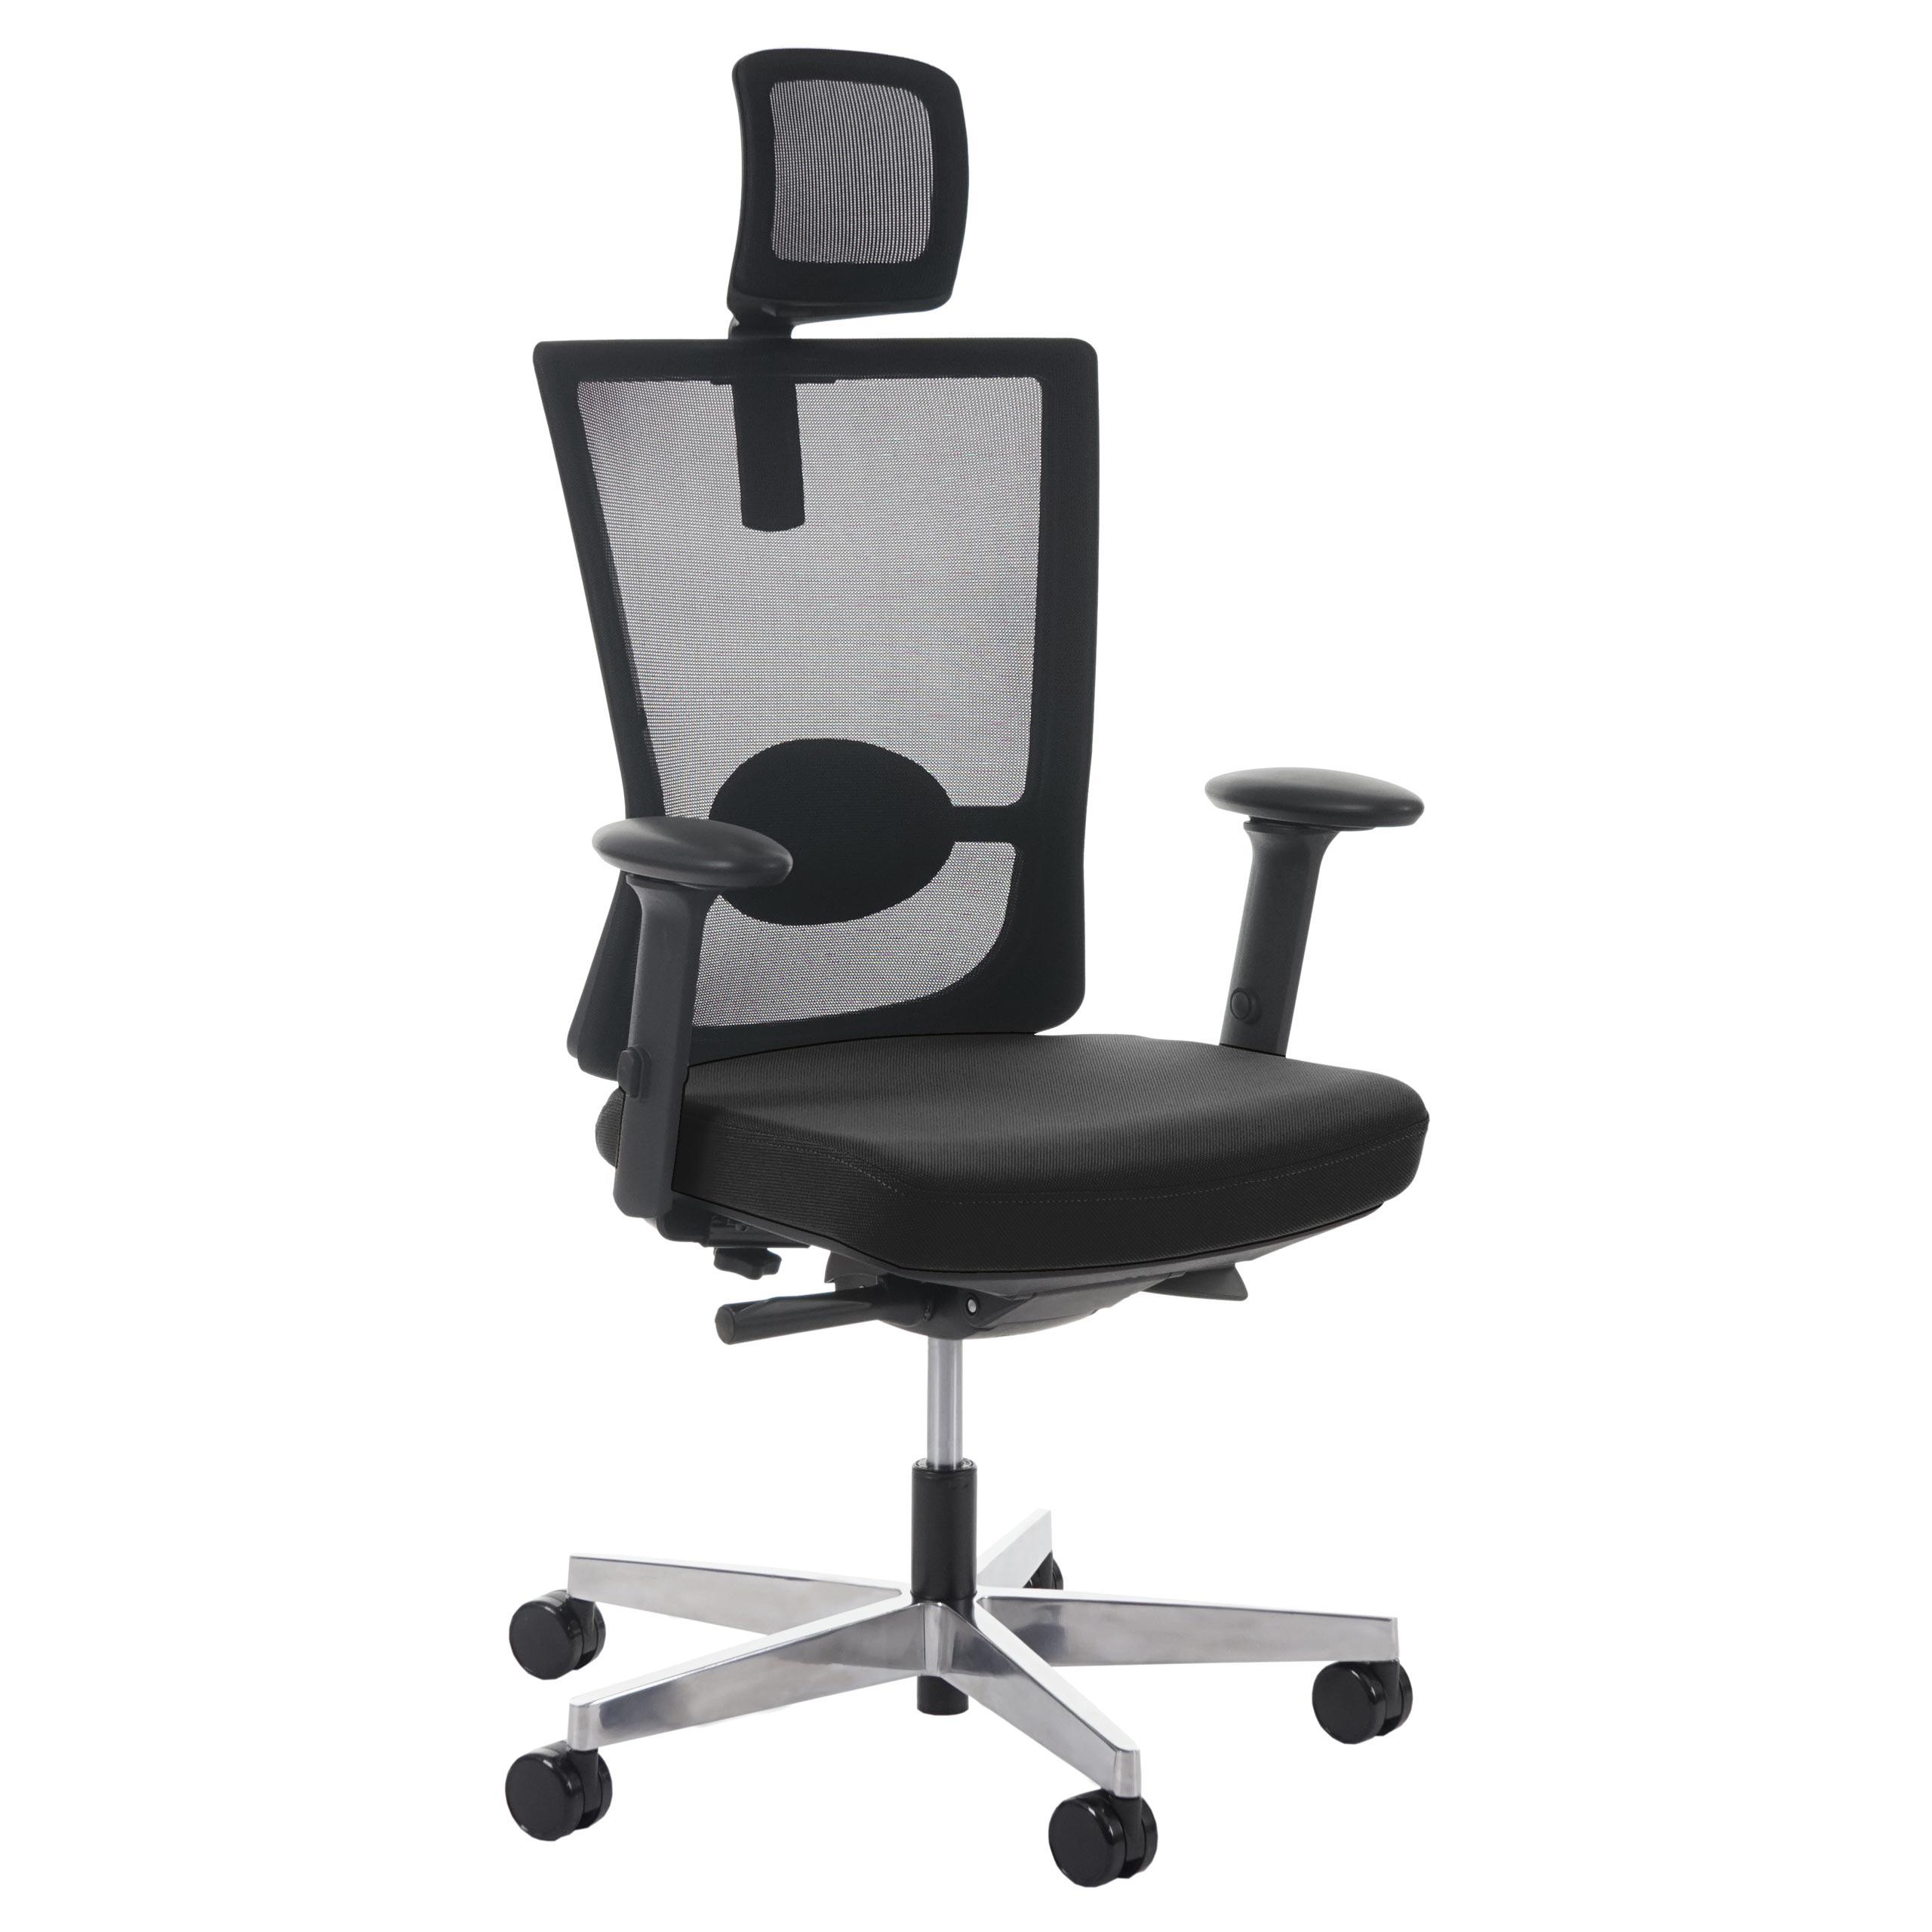 Chaise ergonomique NIL PRO, 100% Ajustable, Excellente Qualité, Utilisation 8 heures, Noir